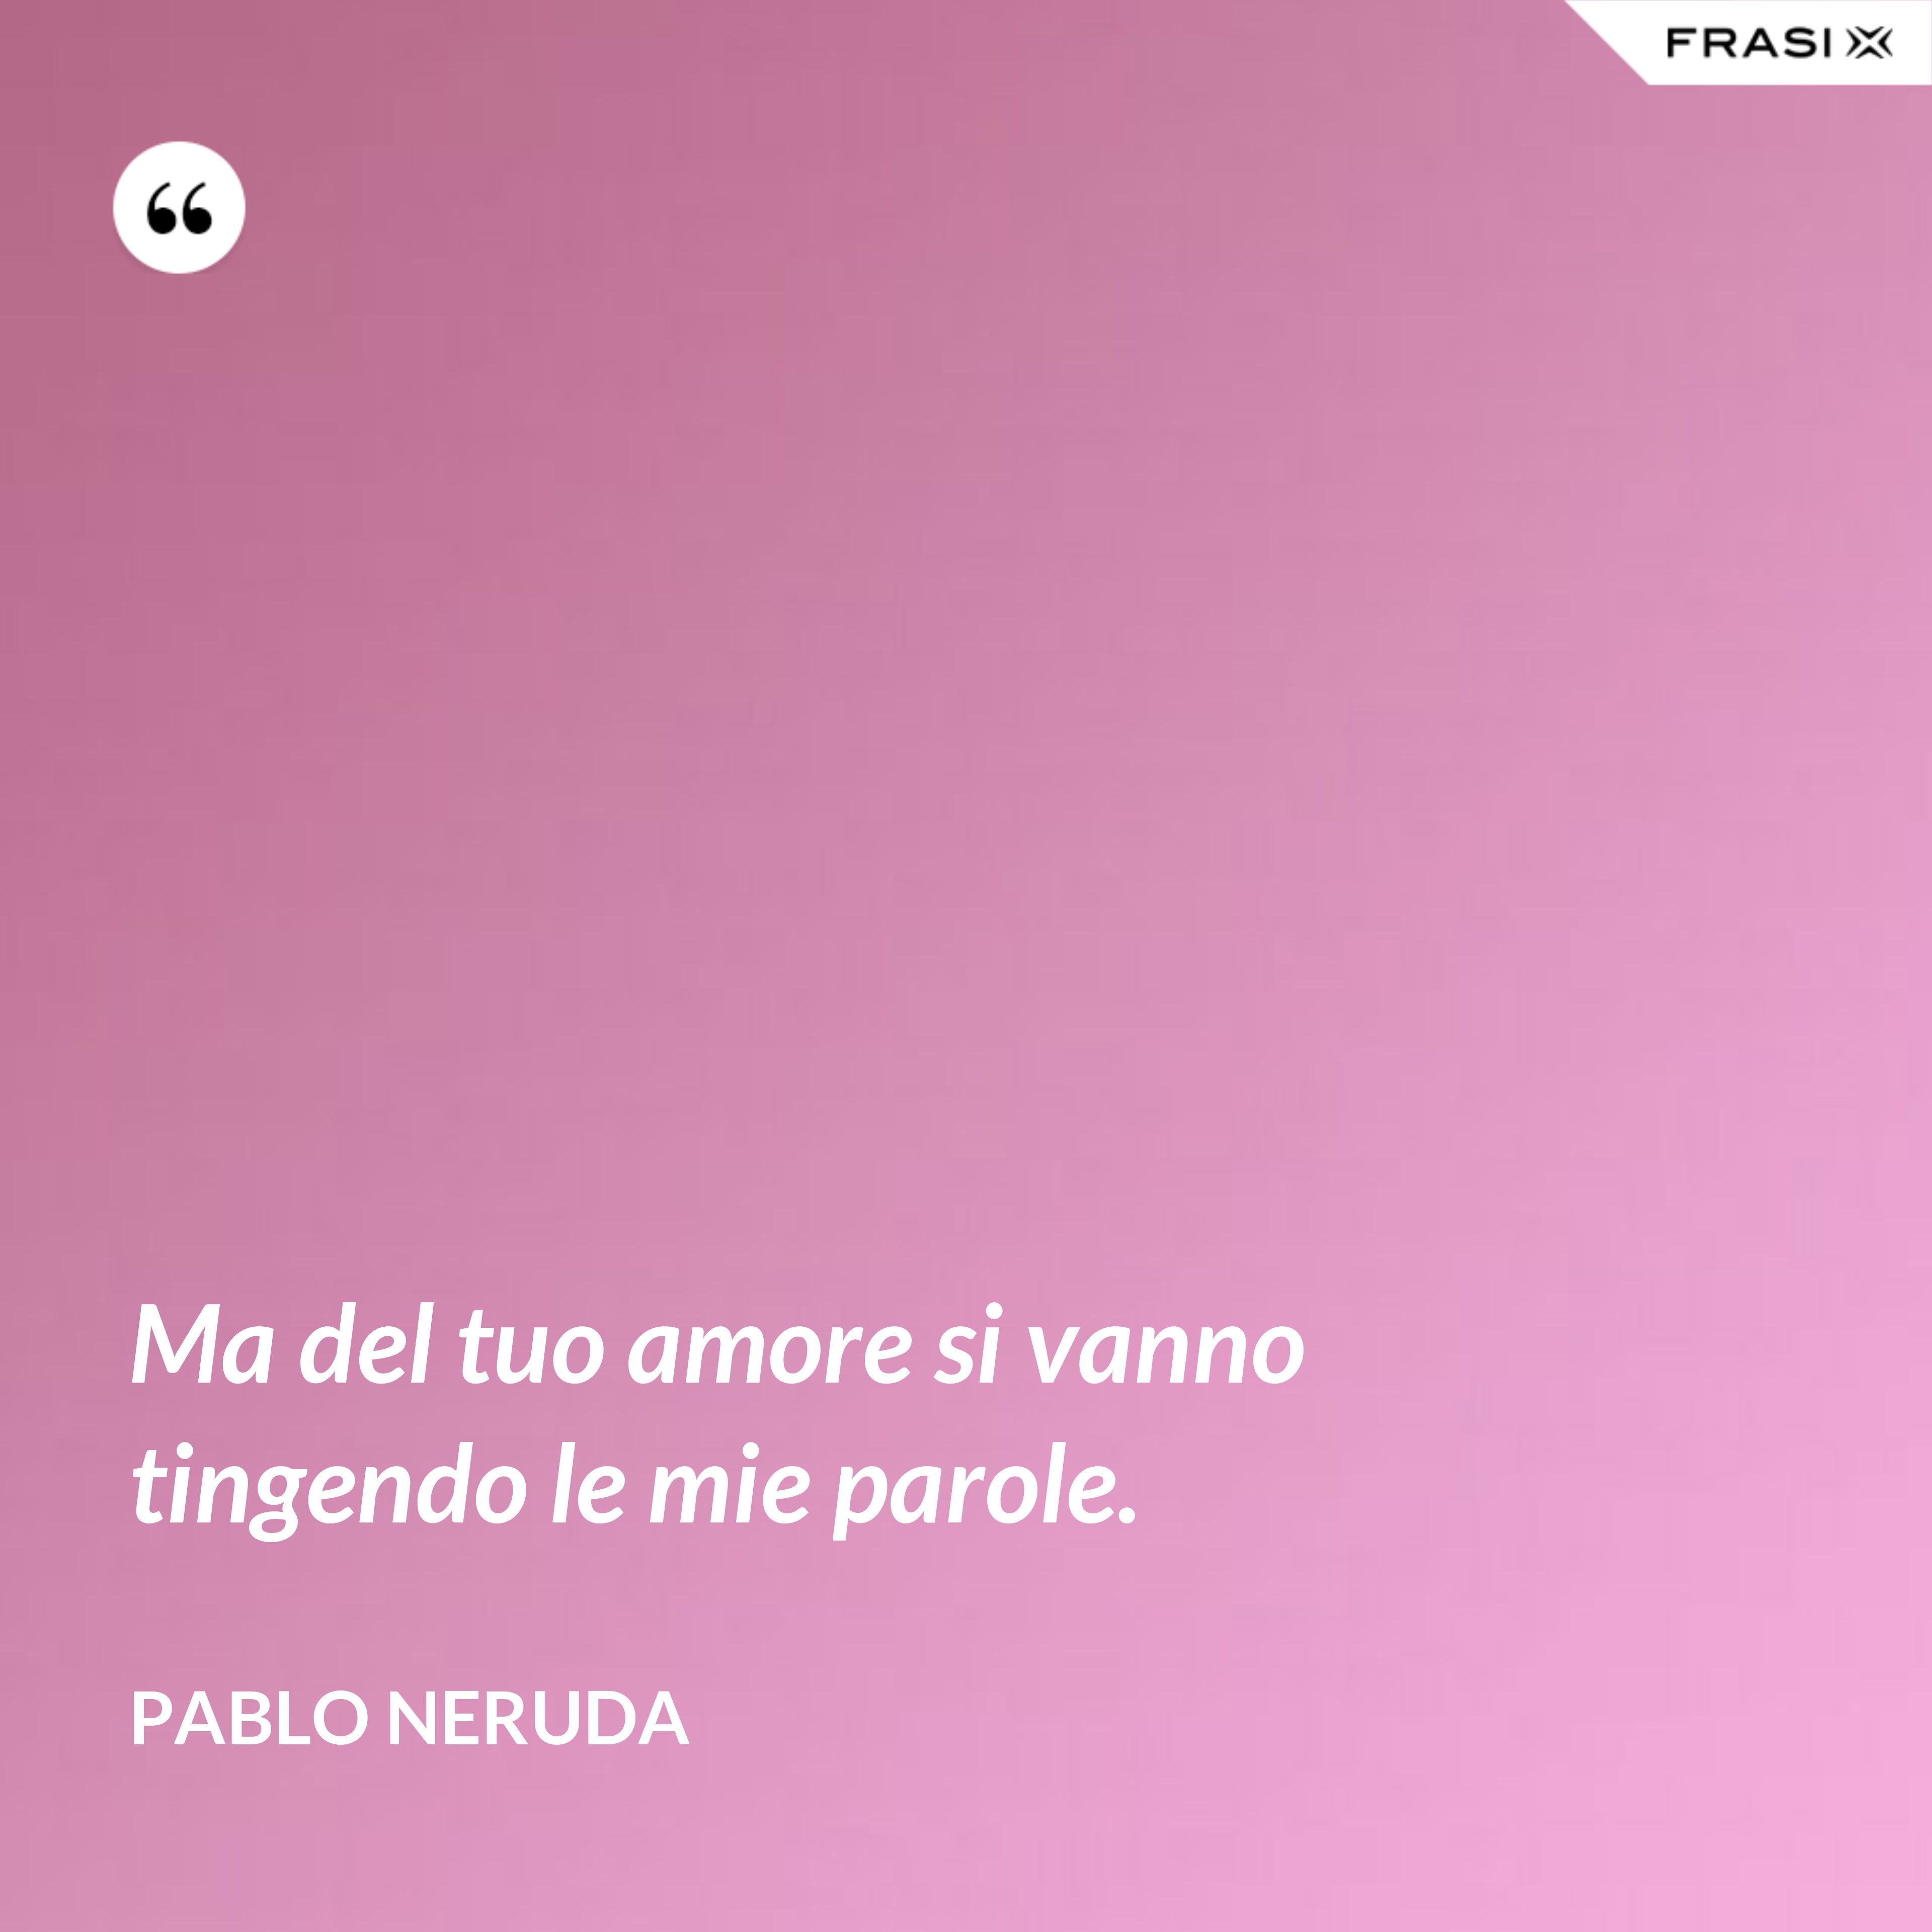 Ma del tuo amore si vanno tingendo le mie parole. - Pablo Neruda